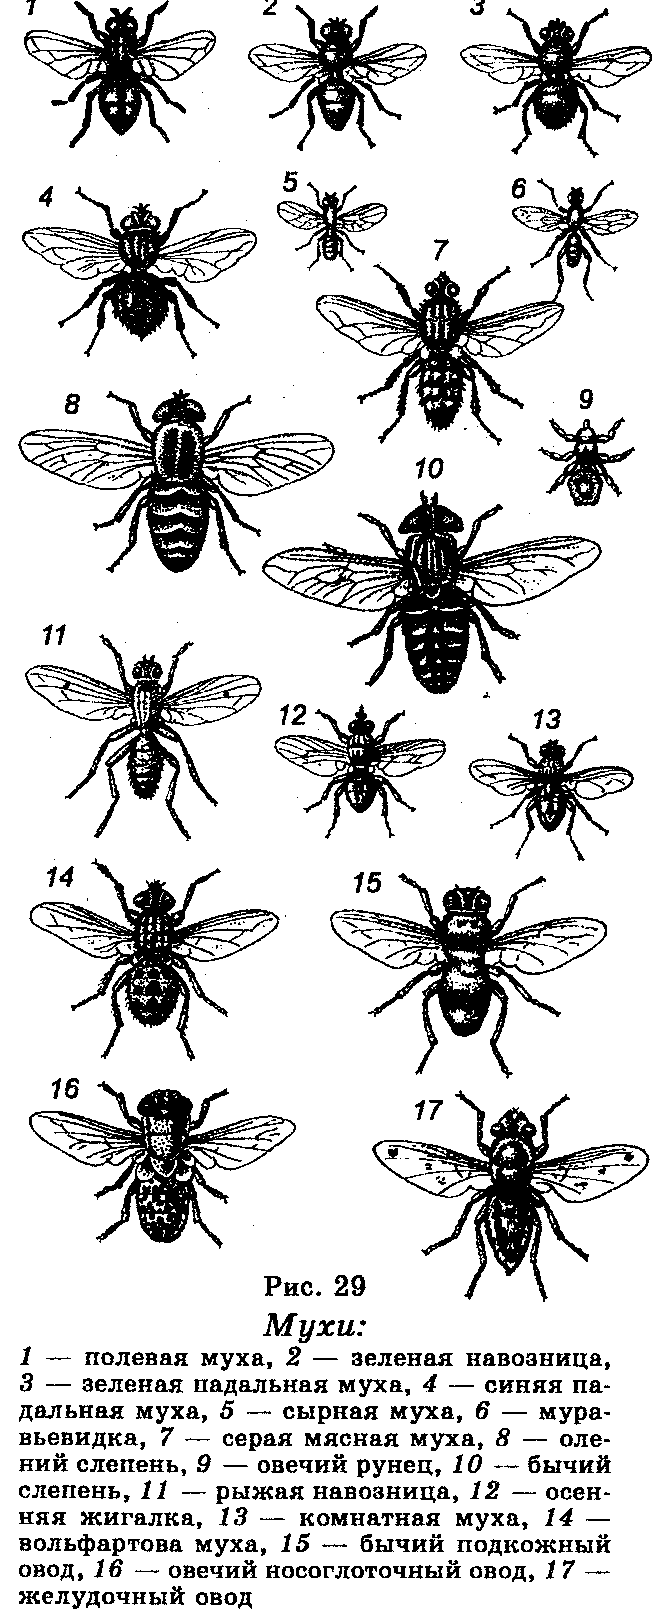 Полевая муха. Классификация мухи. Тип развития мухи. Виды полевых мух.